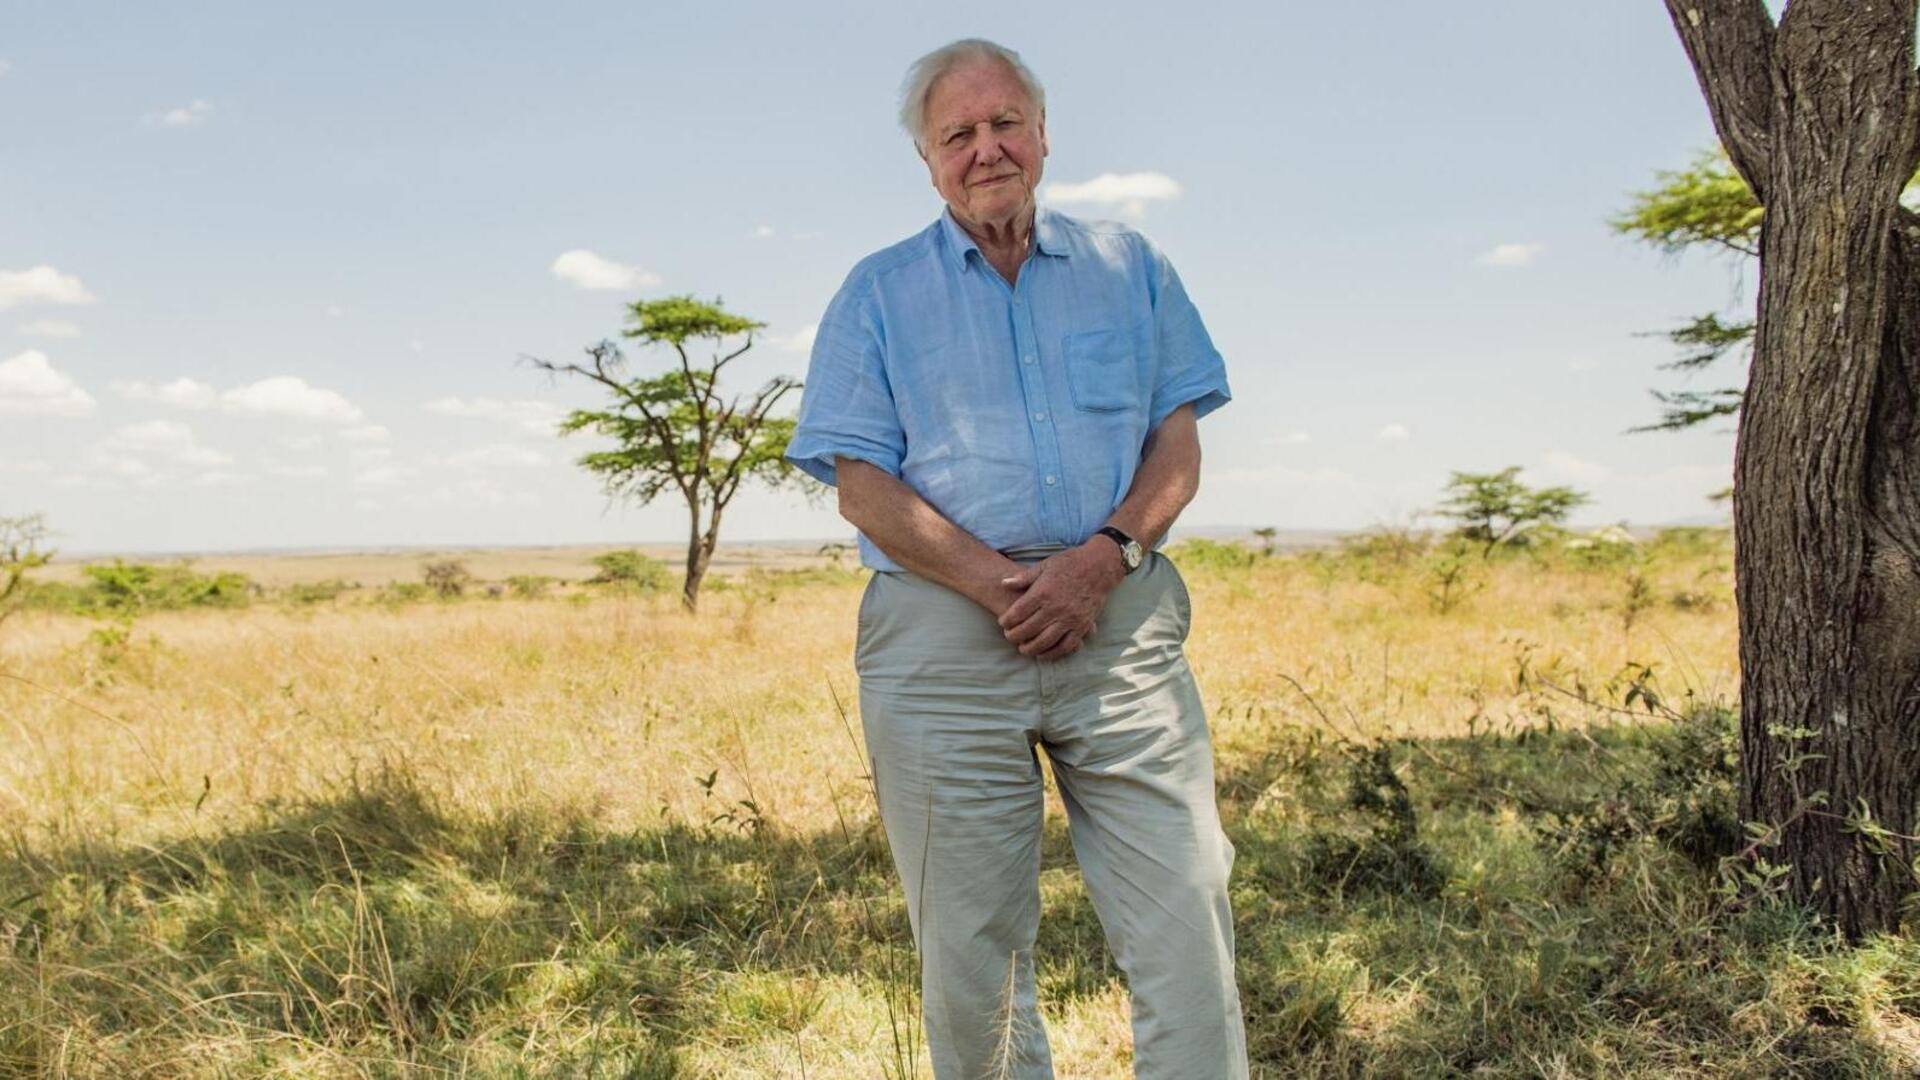 David Attenborough's best documentaries, shows 